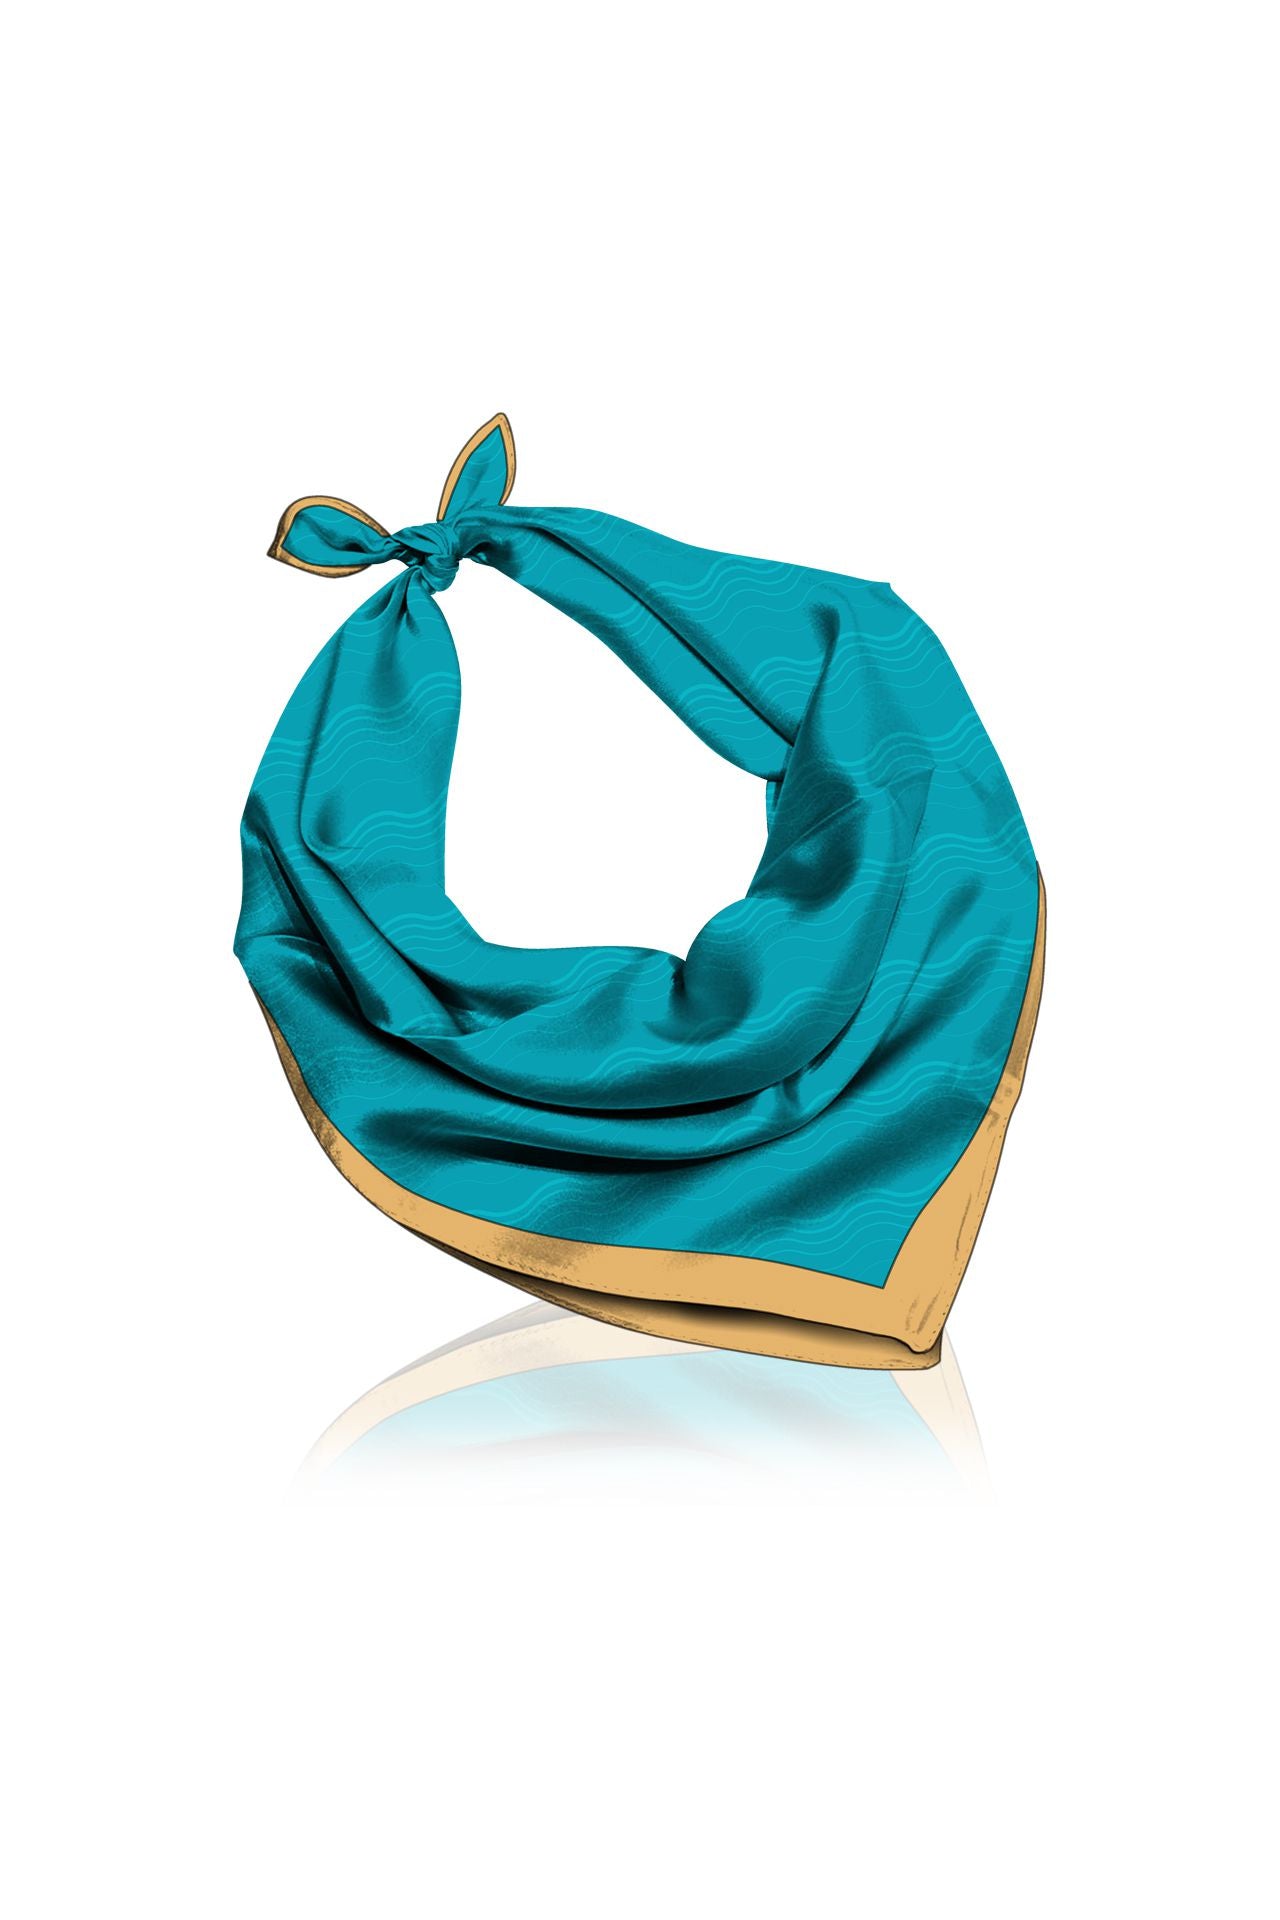 "Kyle X Shahida" "silk head scarves for women" "designer scarves for women" "best luxury silk scarves"